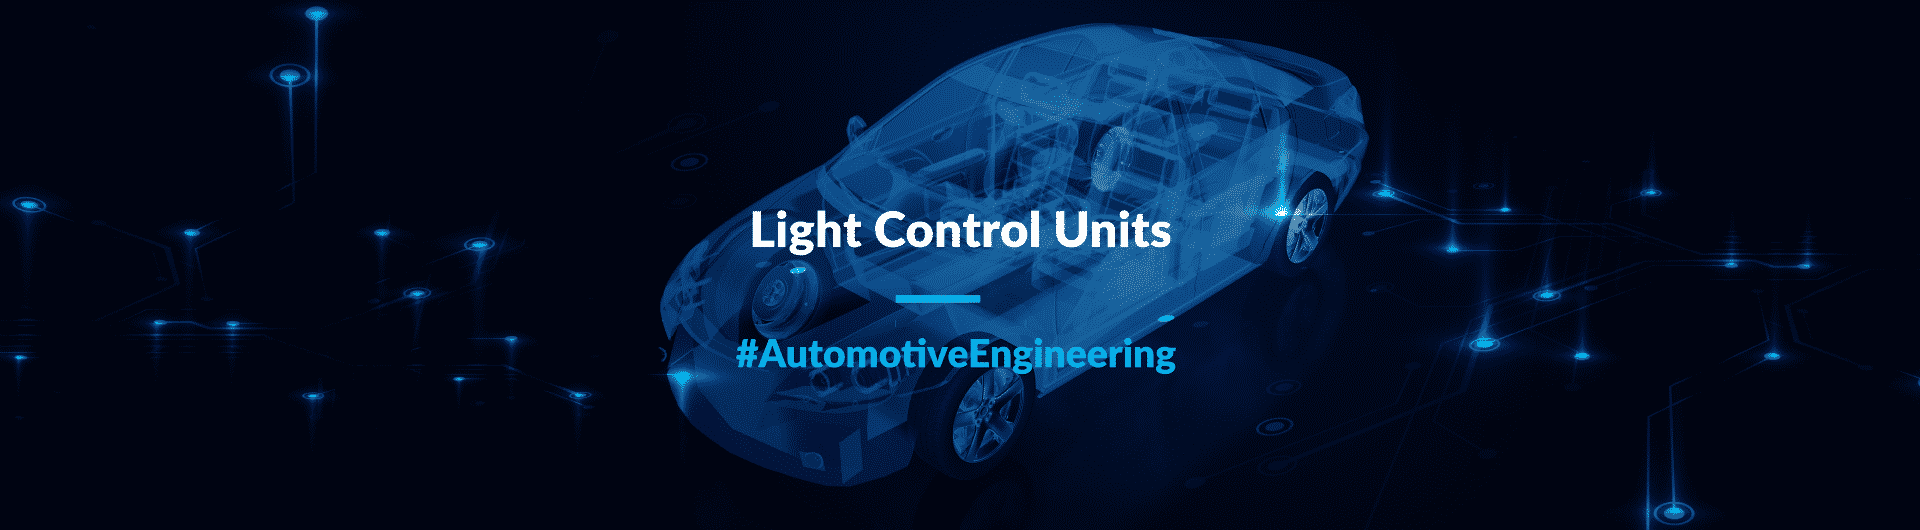 Automotive_cover_site_light_control_units